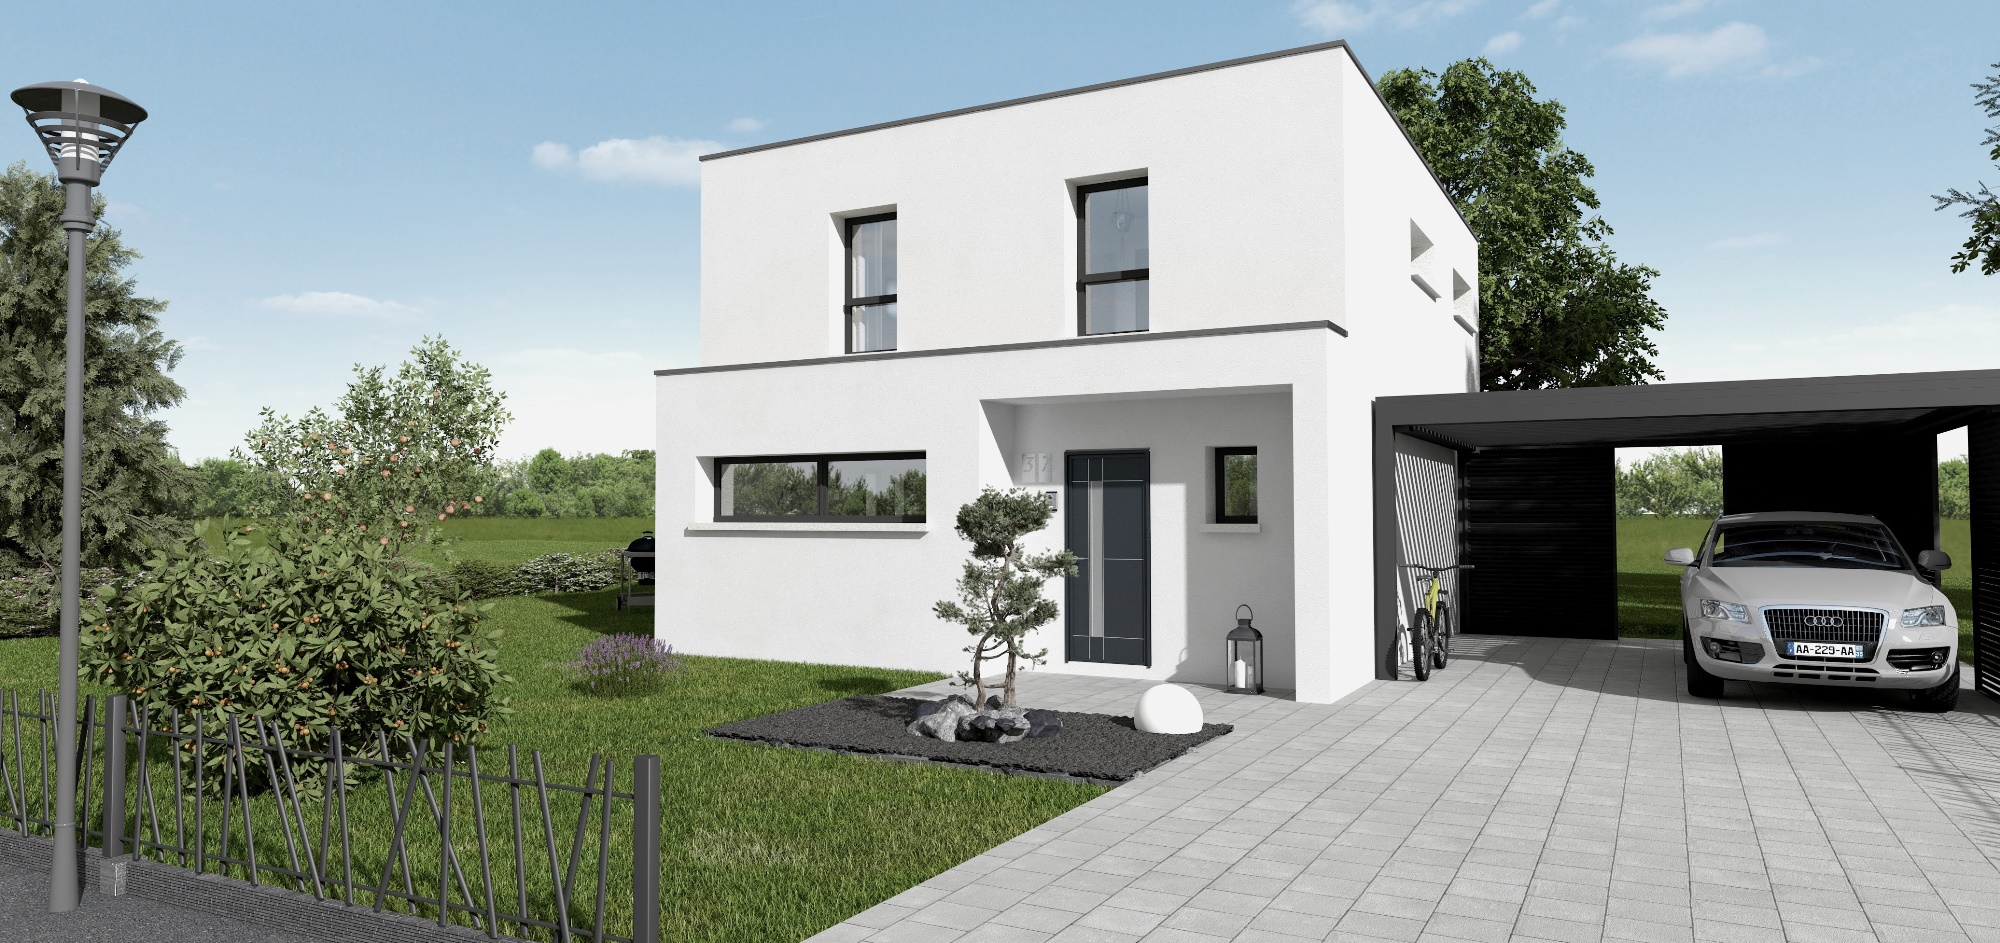 Programme immobilier neuf Maison Neuve Individuelle à Morschwiller Le Bas